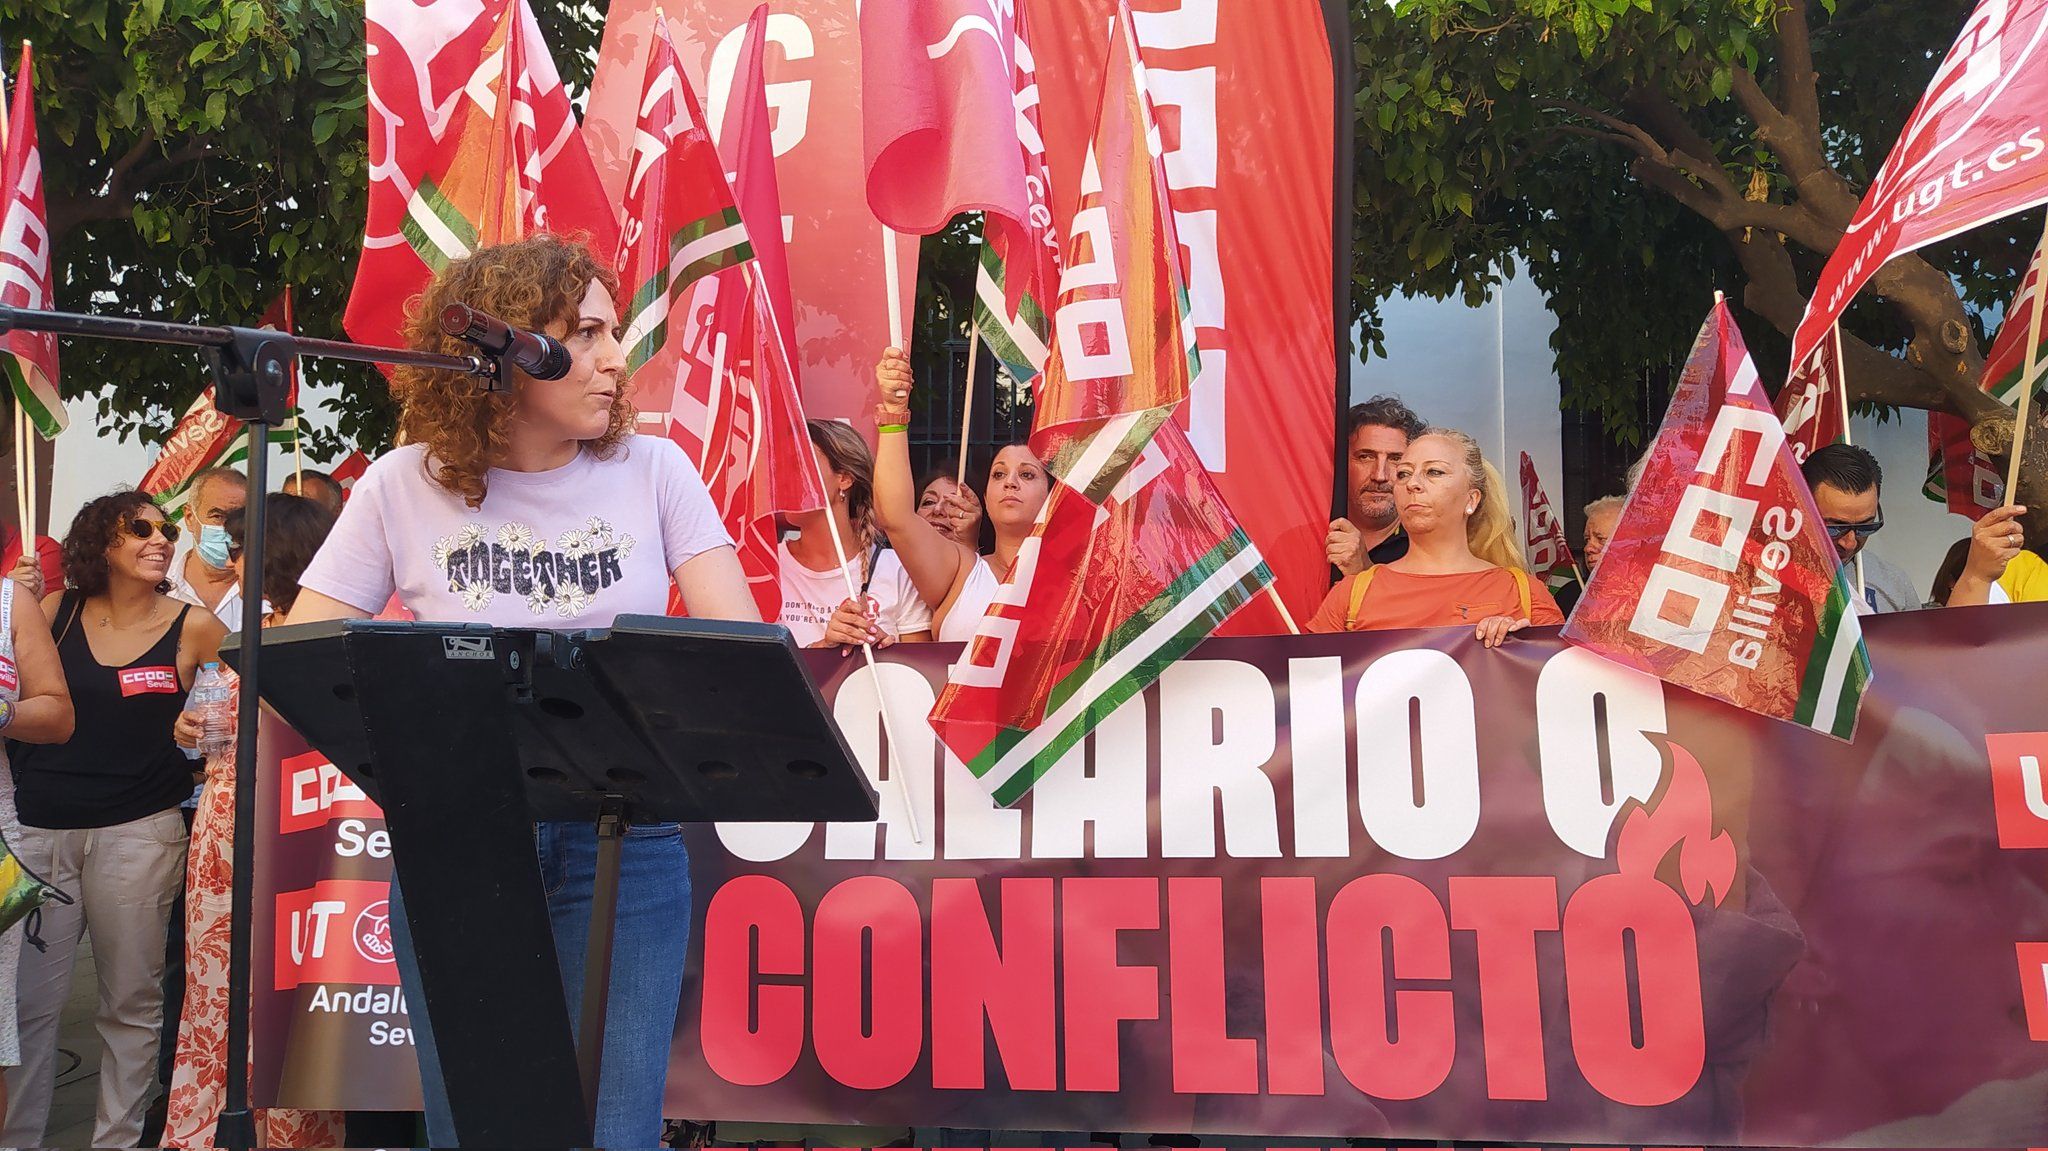 Una imagen de Nuria López en la primera de las movilizaciones, "salario o conflicto".